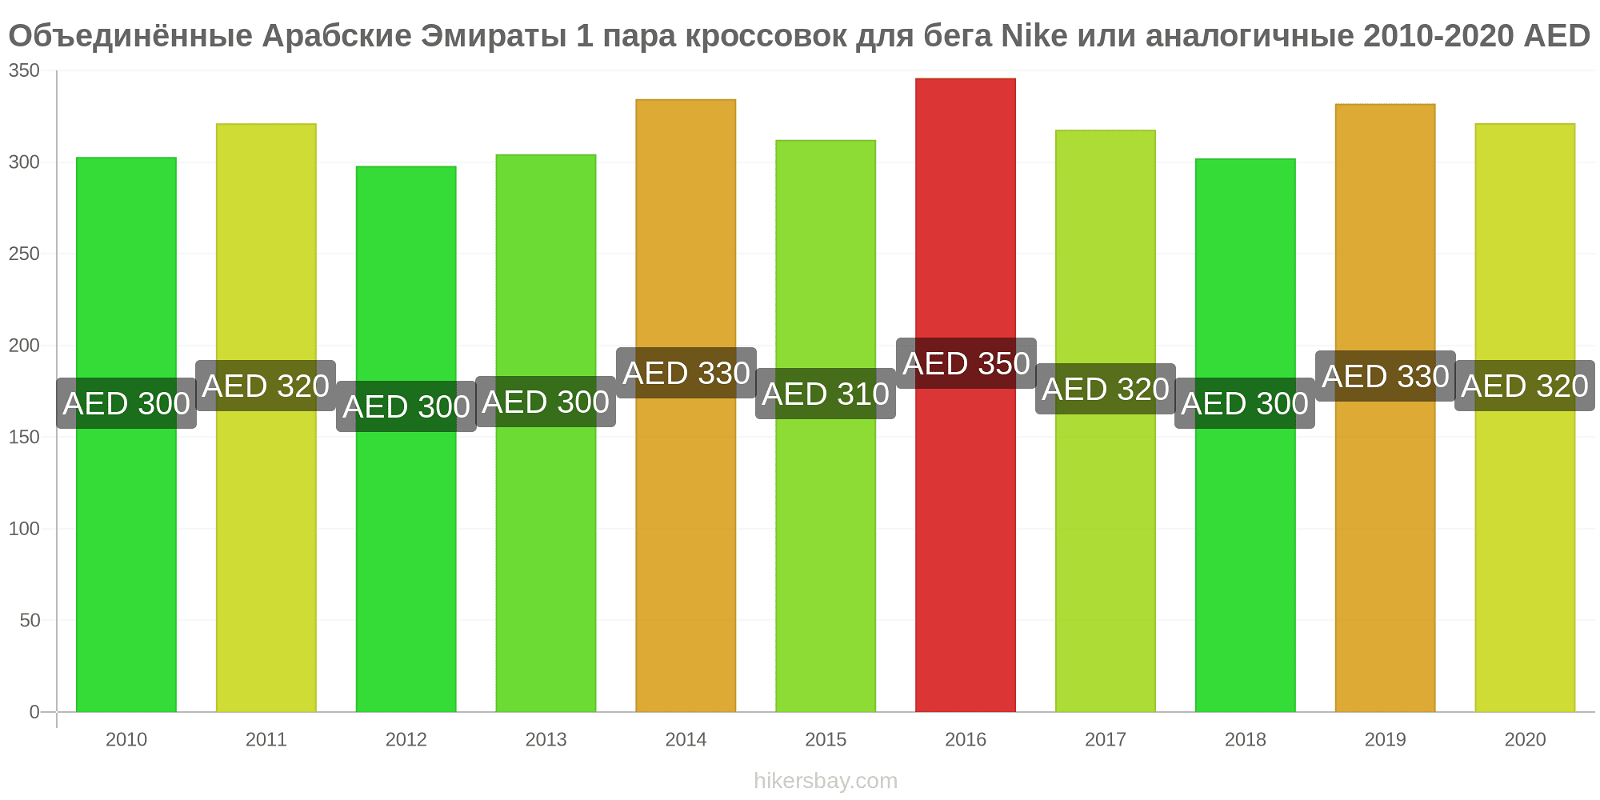 Объединённые Арабские Эмираты изменения цен 1 пара кроссовок для бега Nike или аналогичные hikersbay.com